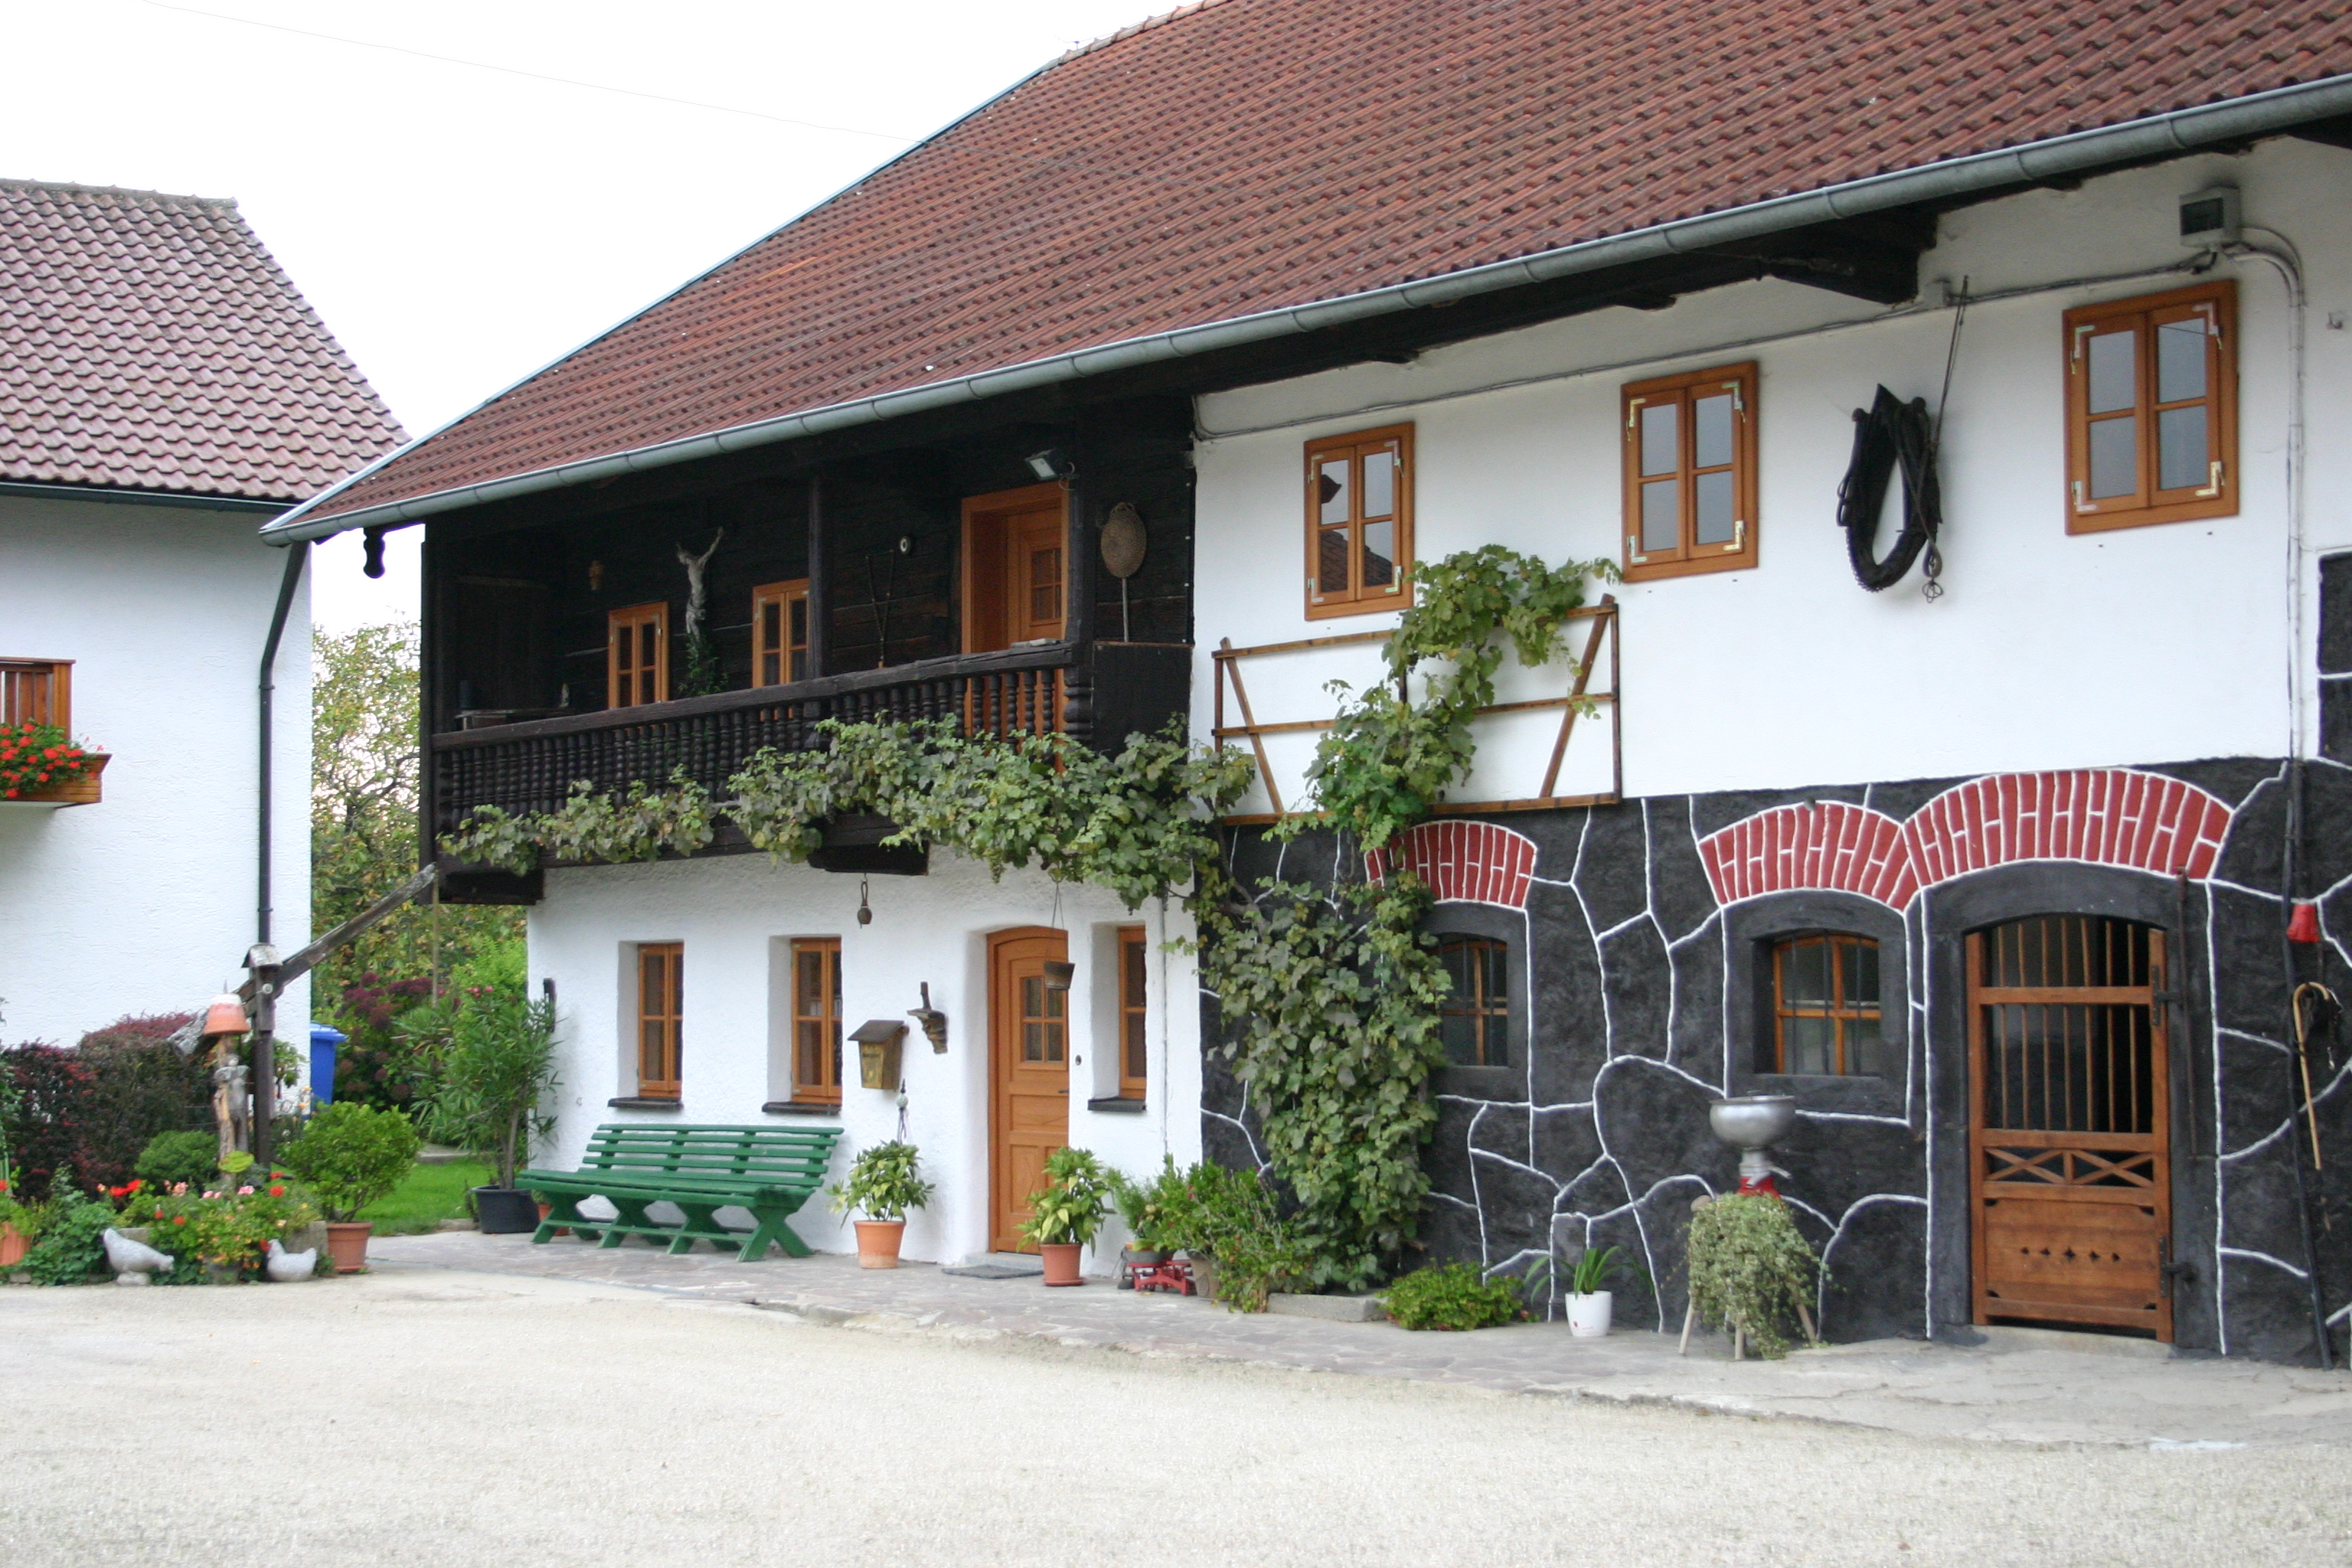 Bauernhof Cafe Im Alten Haus